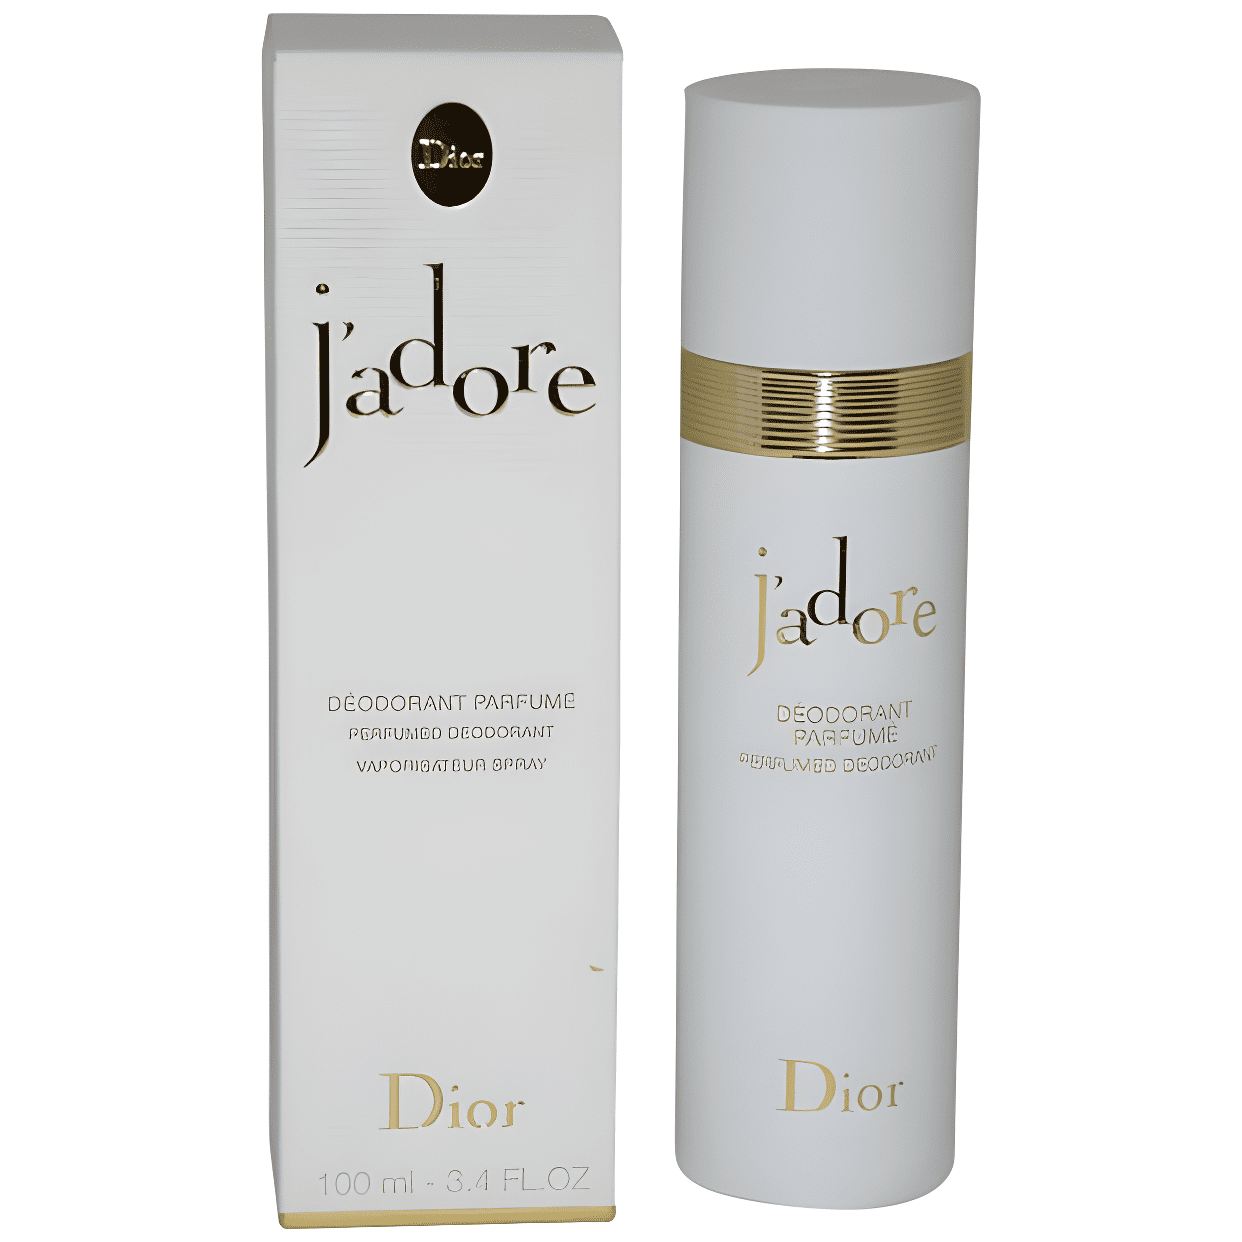 Jadore By Christian Dior Spray 3.4 Walmart.com